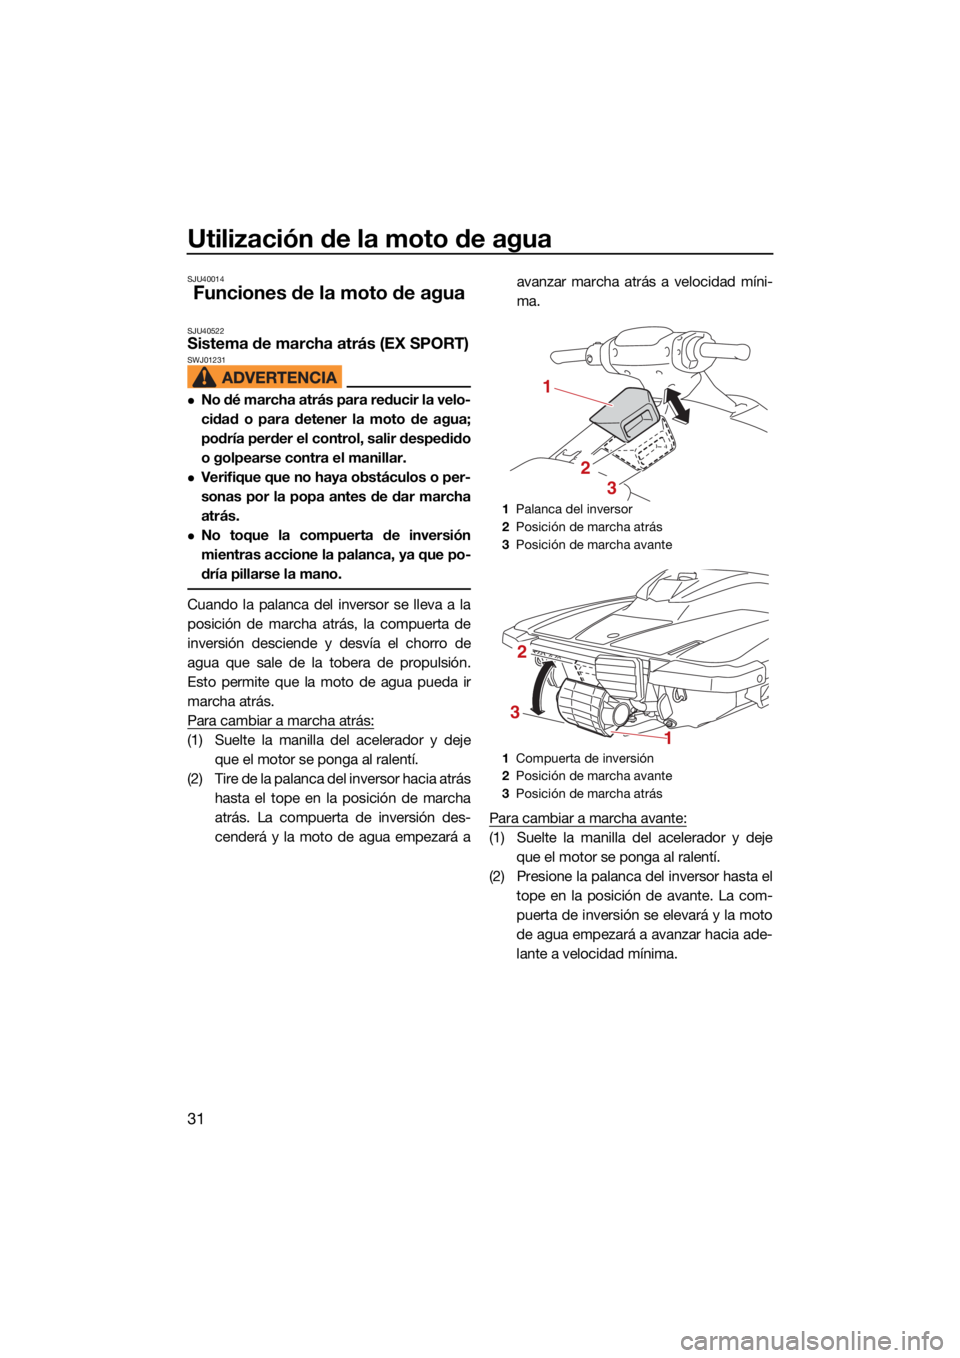 YAMAHA EX SPORT 2021  Manuale de Empleo (in Spanish) Utilización de la moto de agua
31
SJU40014
Funciones de la moto de agua
SJU40522Sistema de marcha atrás (EX SPORT)SWJ01231
No dé marcha atrás para reducir la velo-
cidad o para detener la moto 